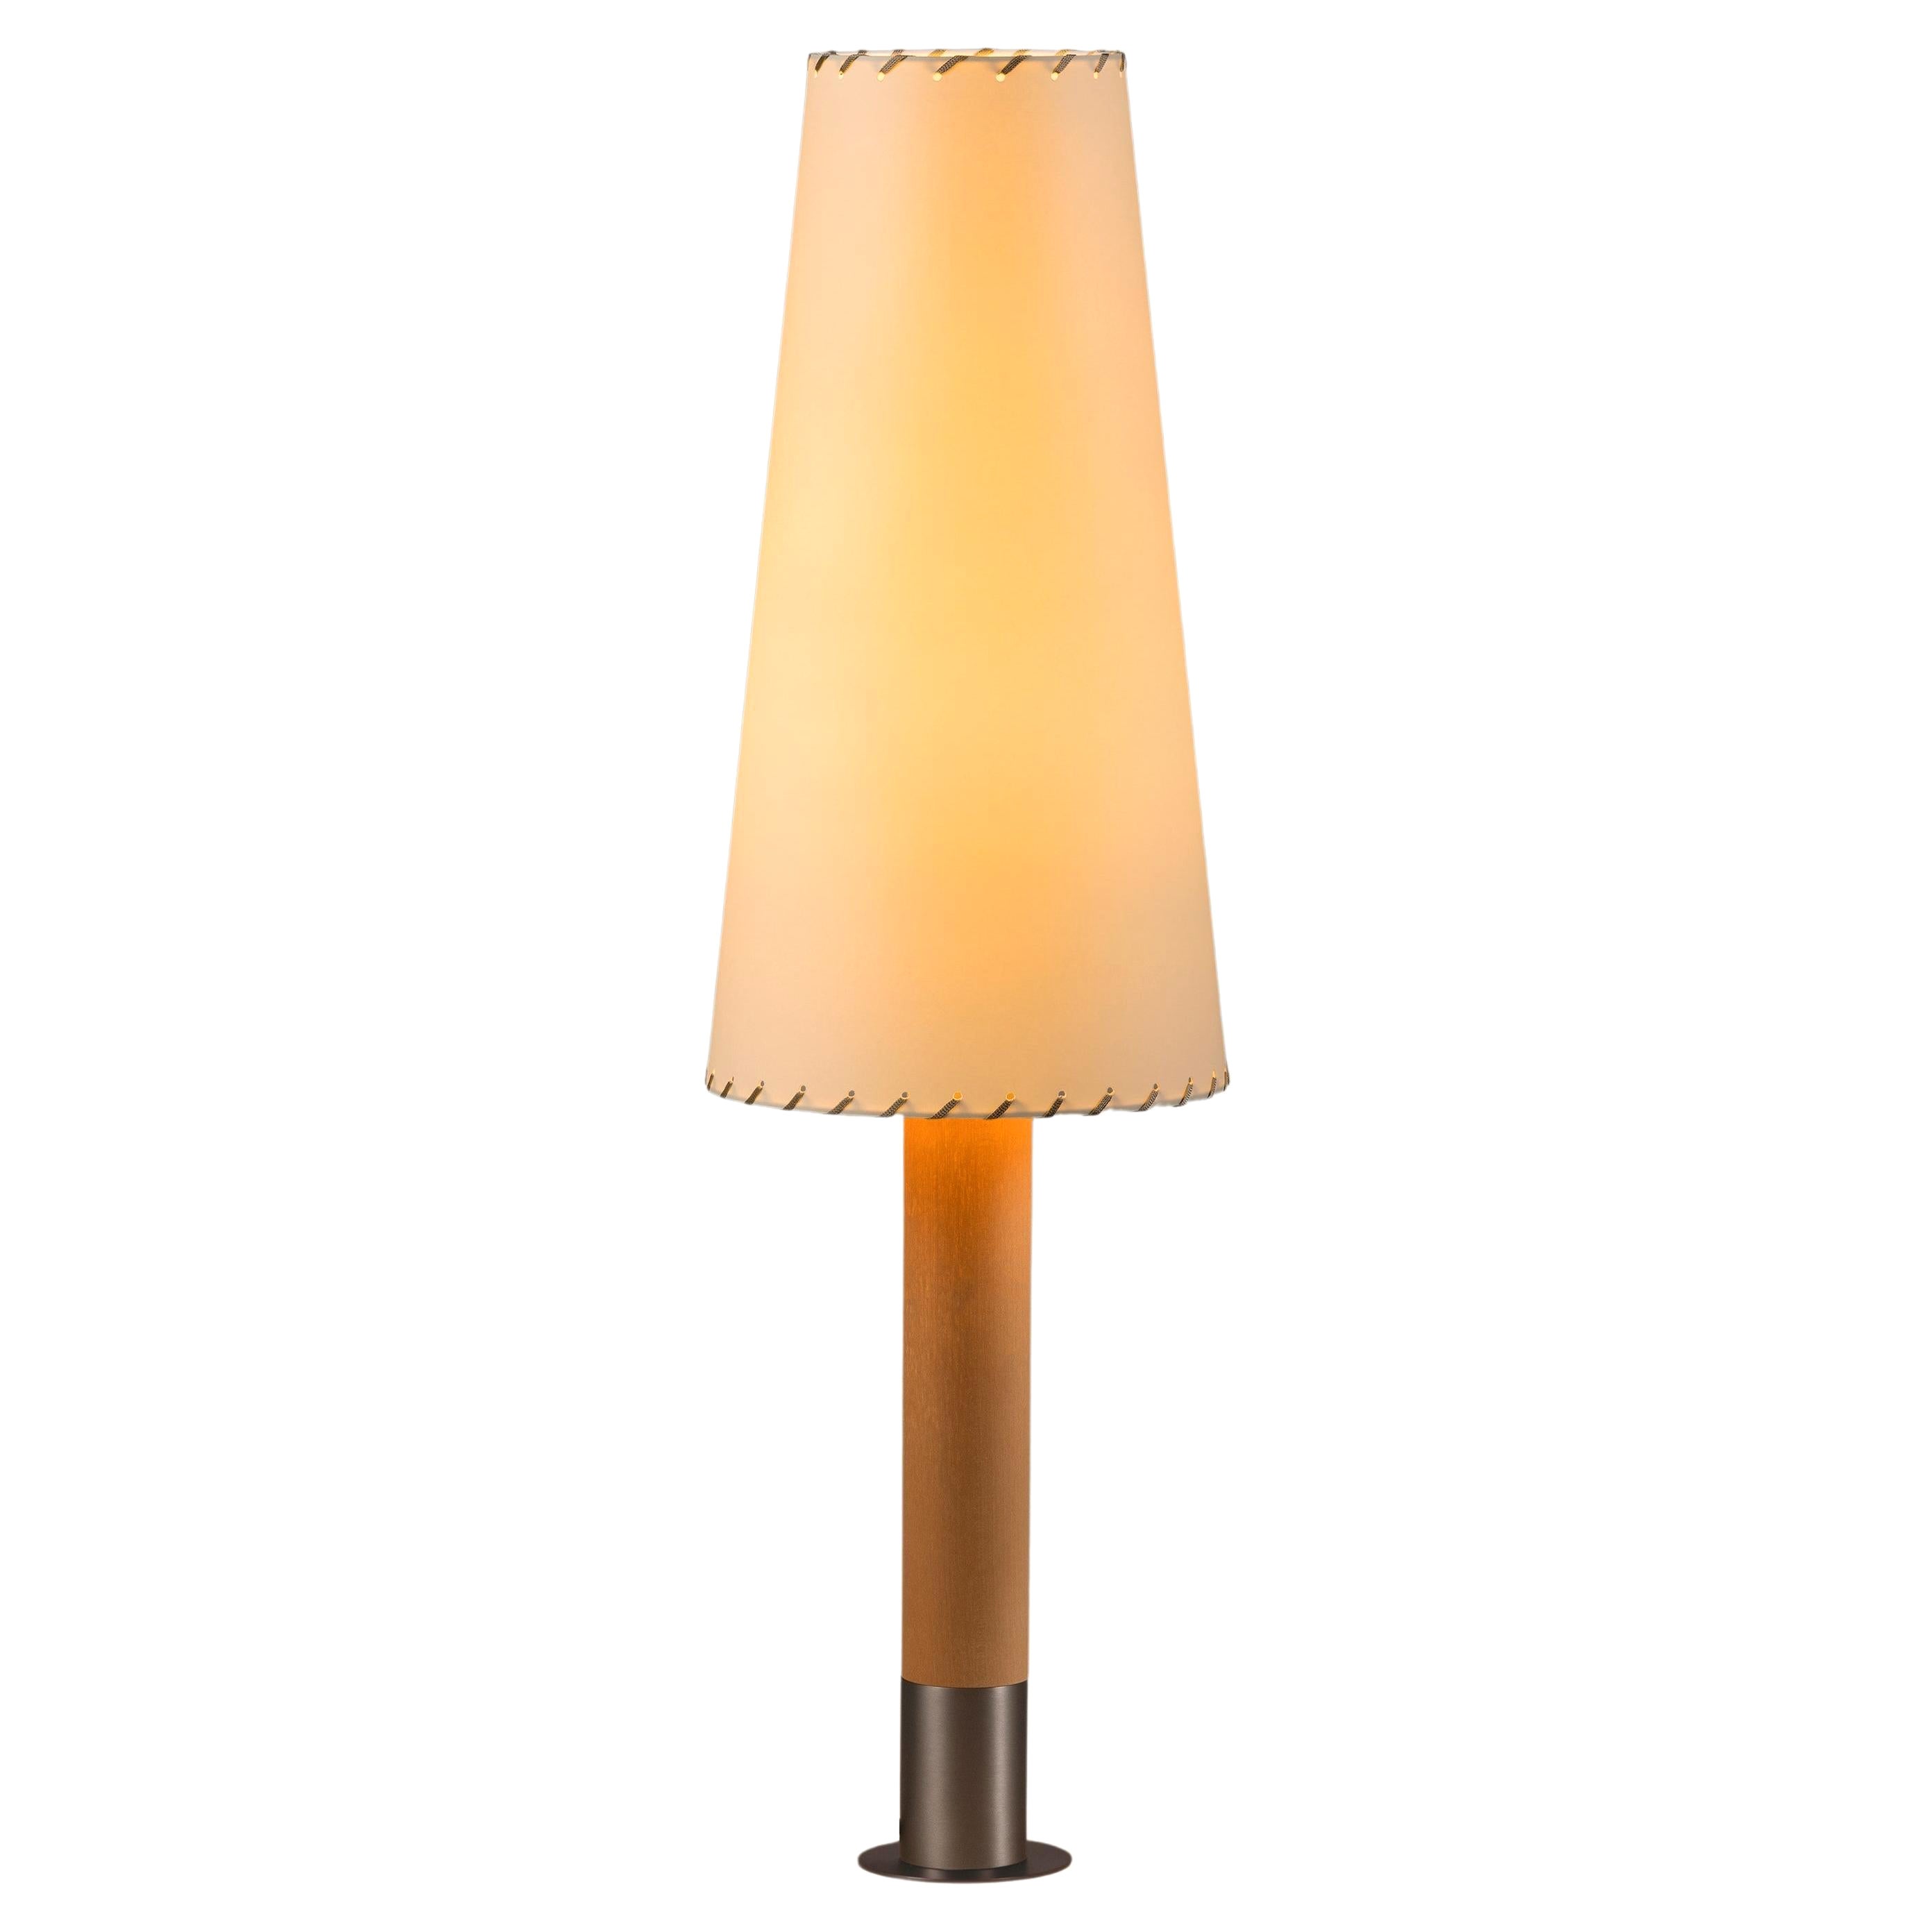 Nickel Básica M2 Table Lamp by Santiago Roqueta, Santa & Cole